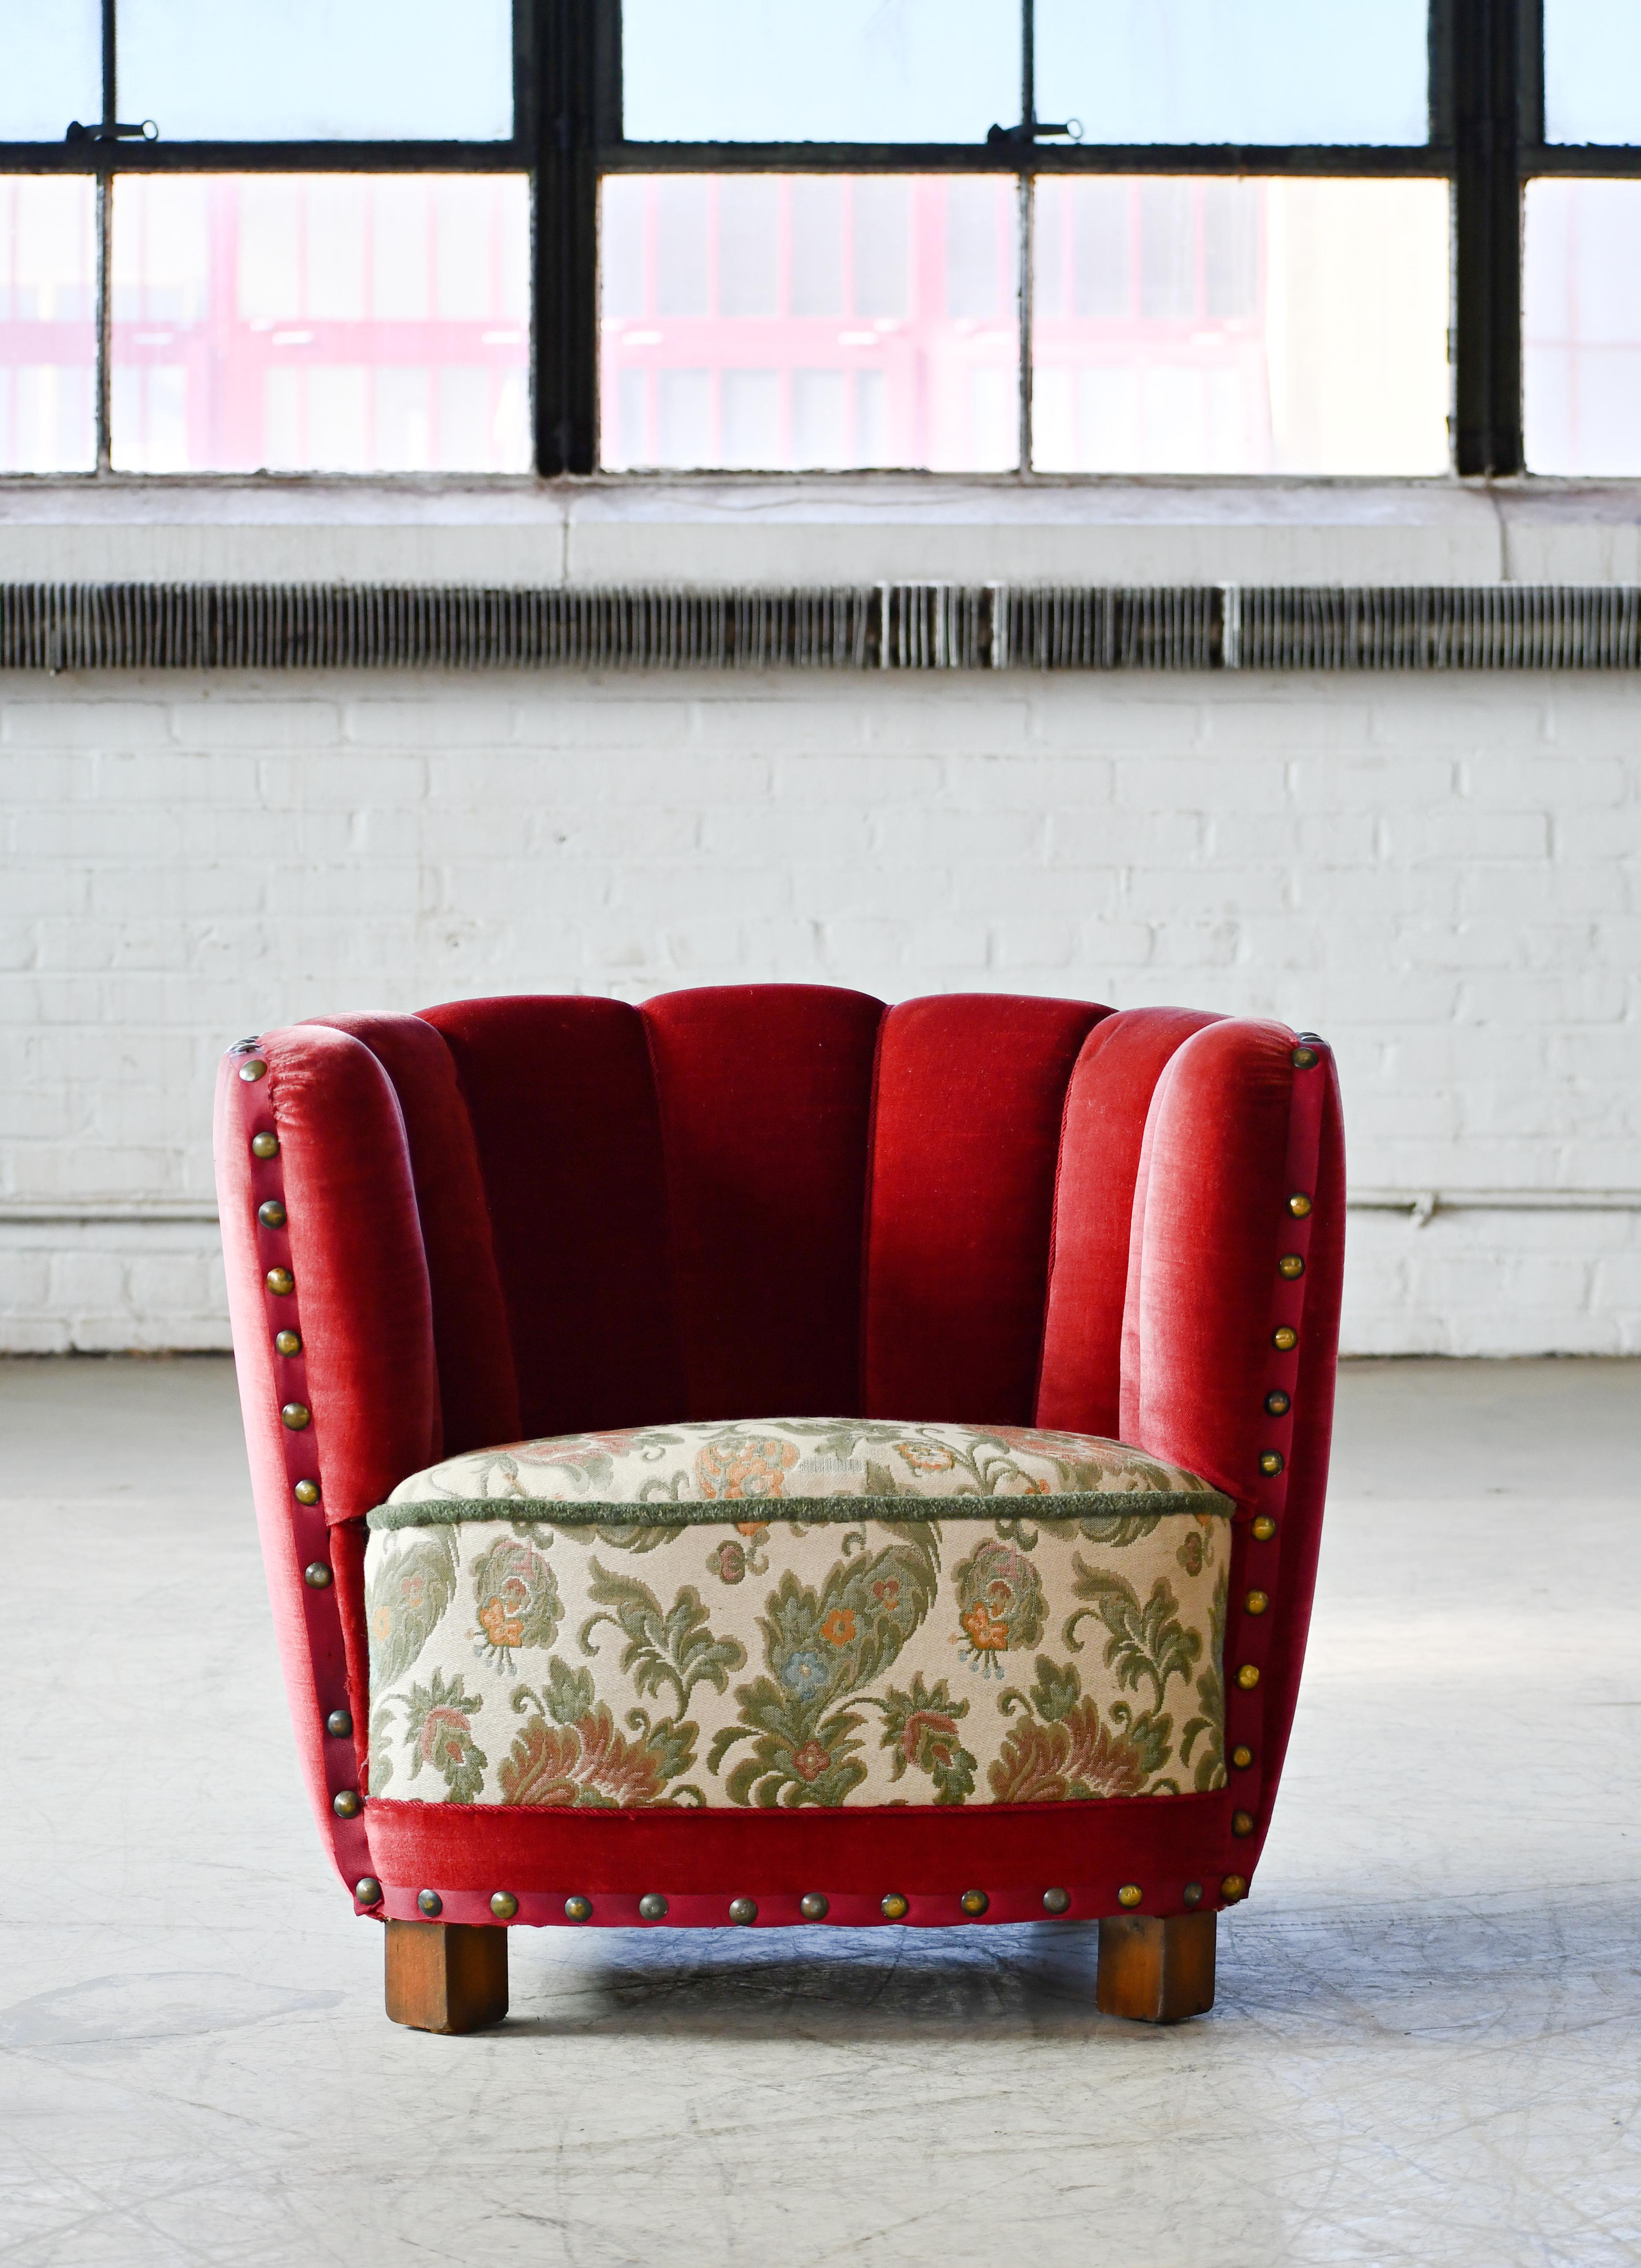 Confortable, exubérante et superbement fabriquée, cette chaise capture parfaitement l'essence du design danois des années 1940, de la fin de l'ère Art déco au début du milieu du siècle. Les dossiers incurvés et les proportions basses indiquent